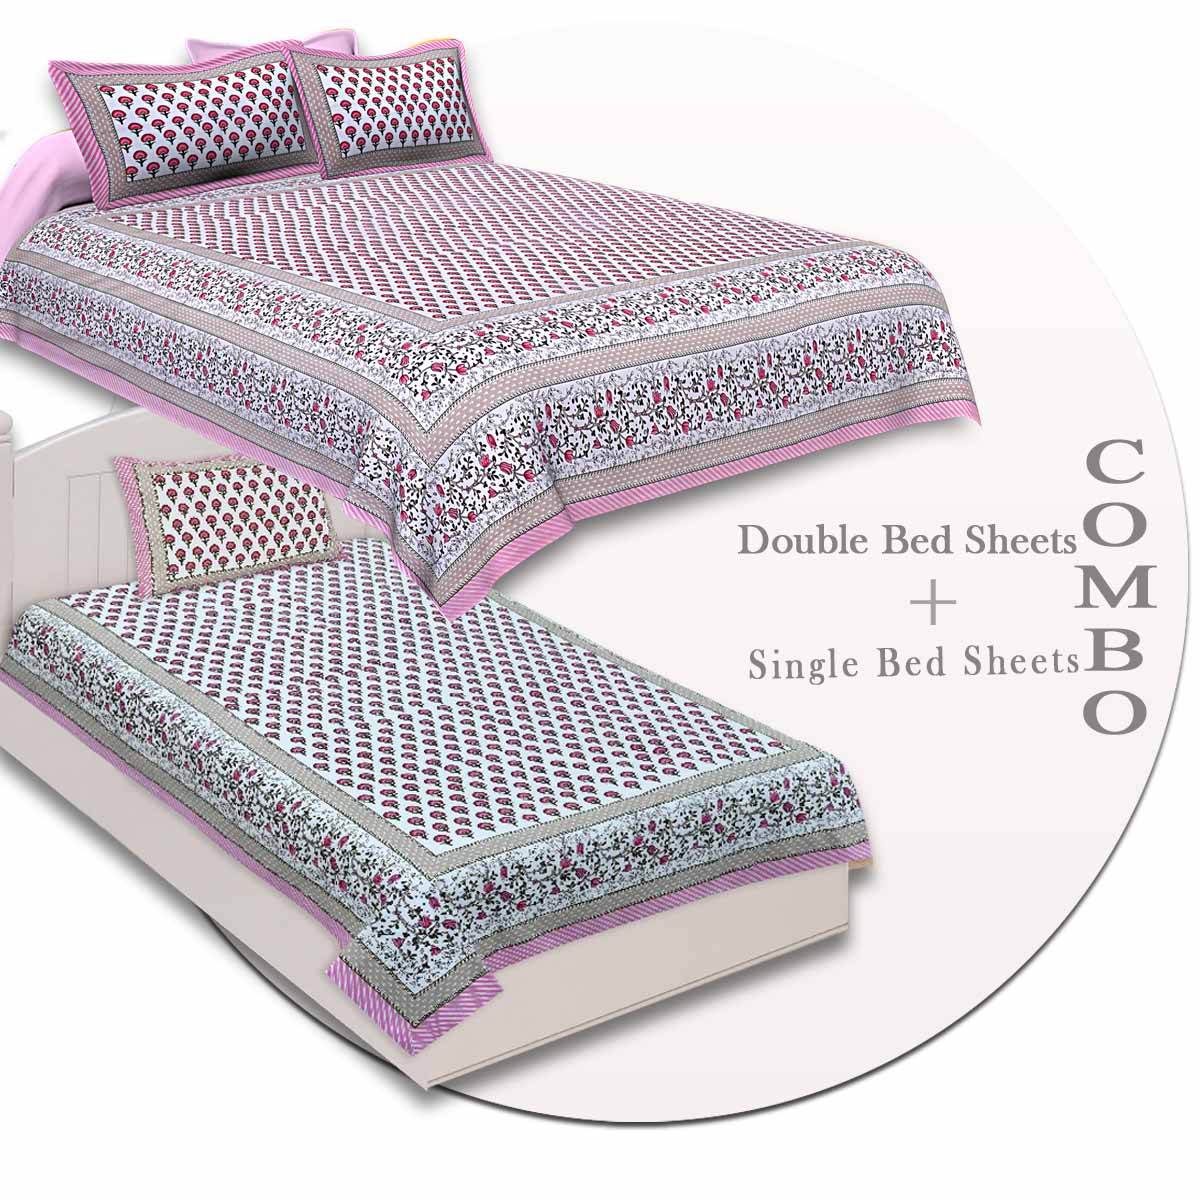 COMBO97 Set of 1 Double Bedsheet and 1 Single Bedsheet With 2+1